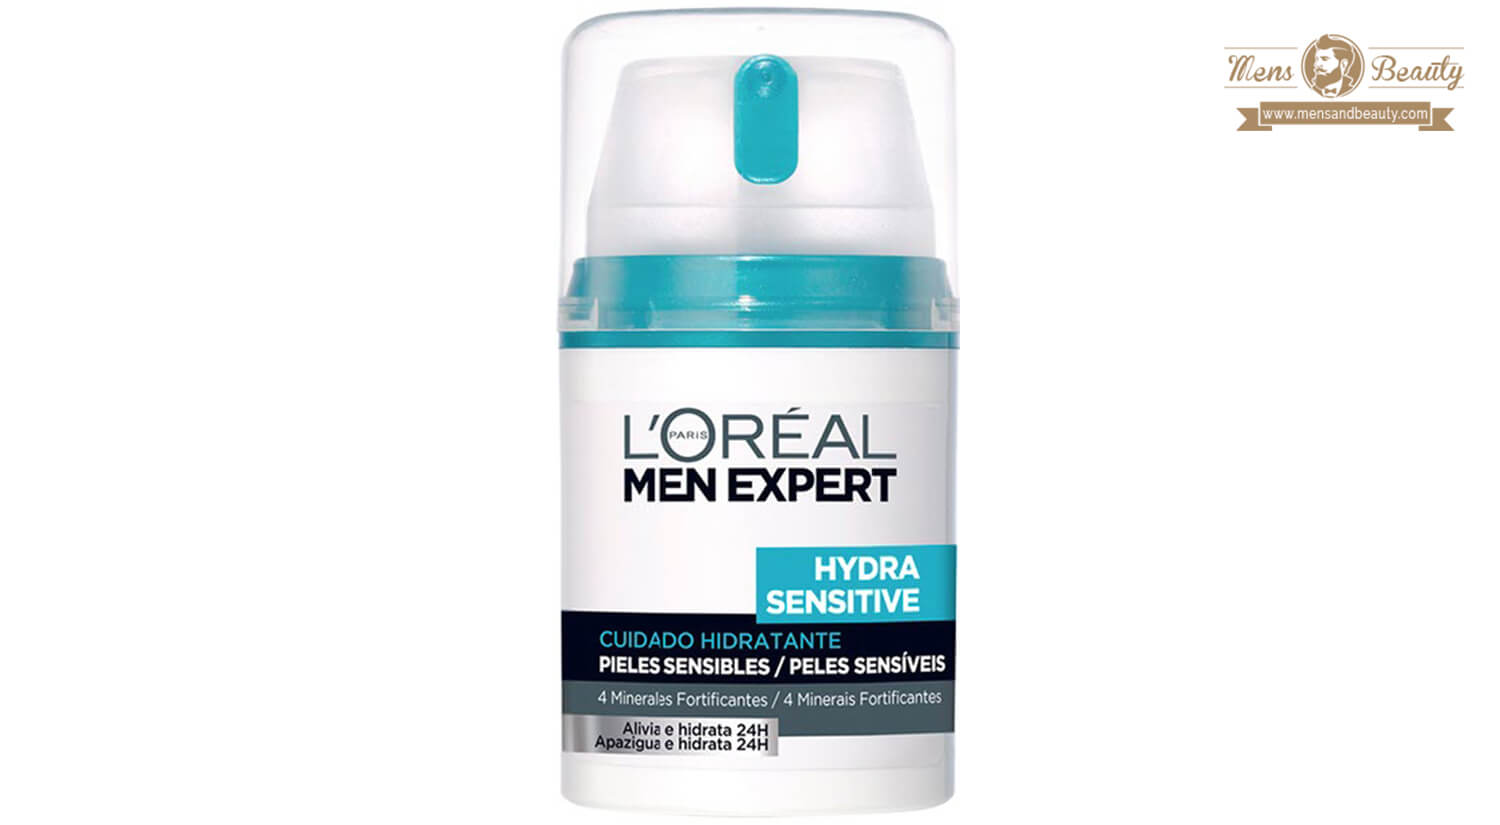 mejores productos para hombre loreal men expert cuidado hidratante hydra sensitive pieles sensibles